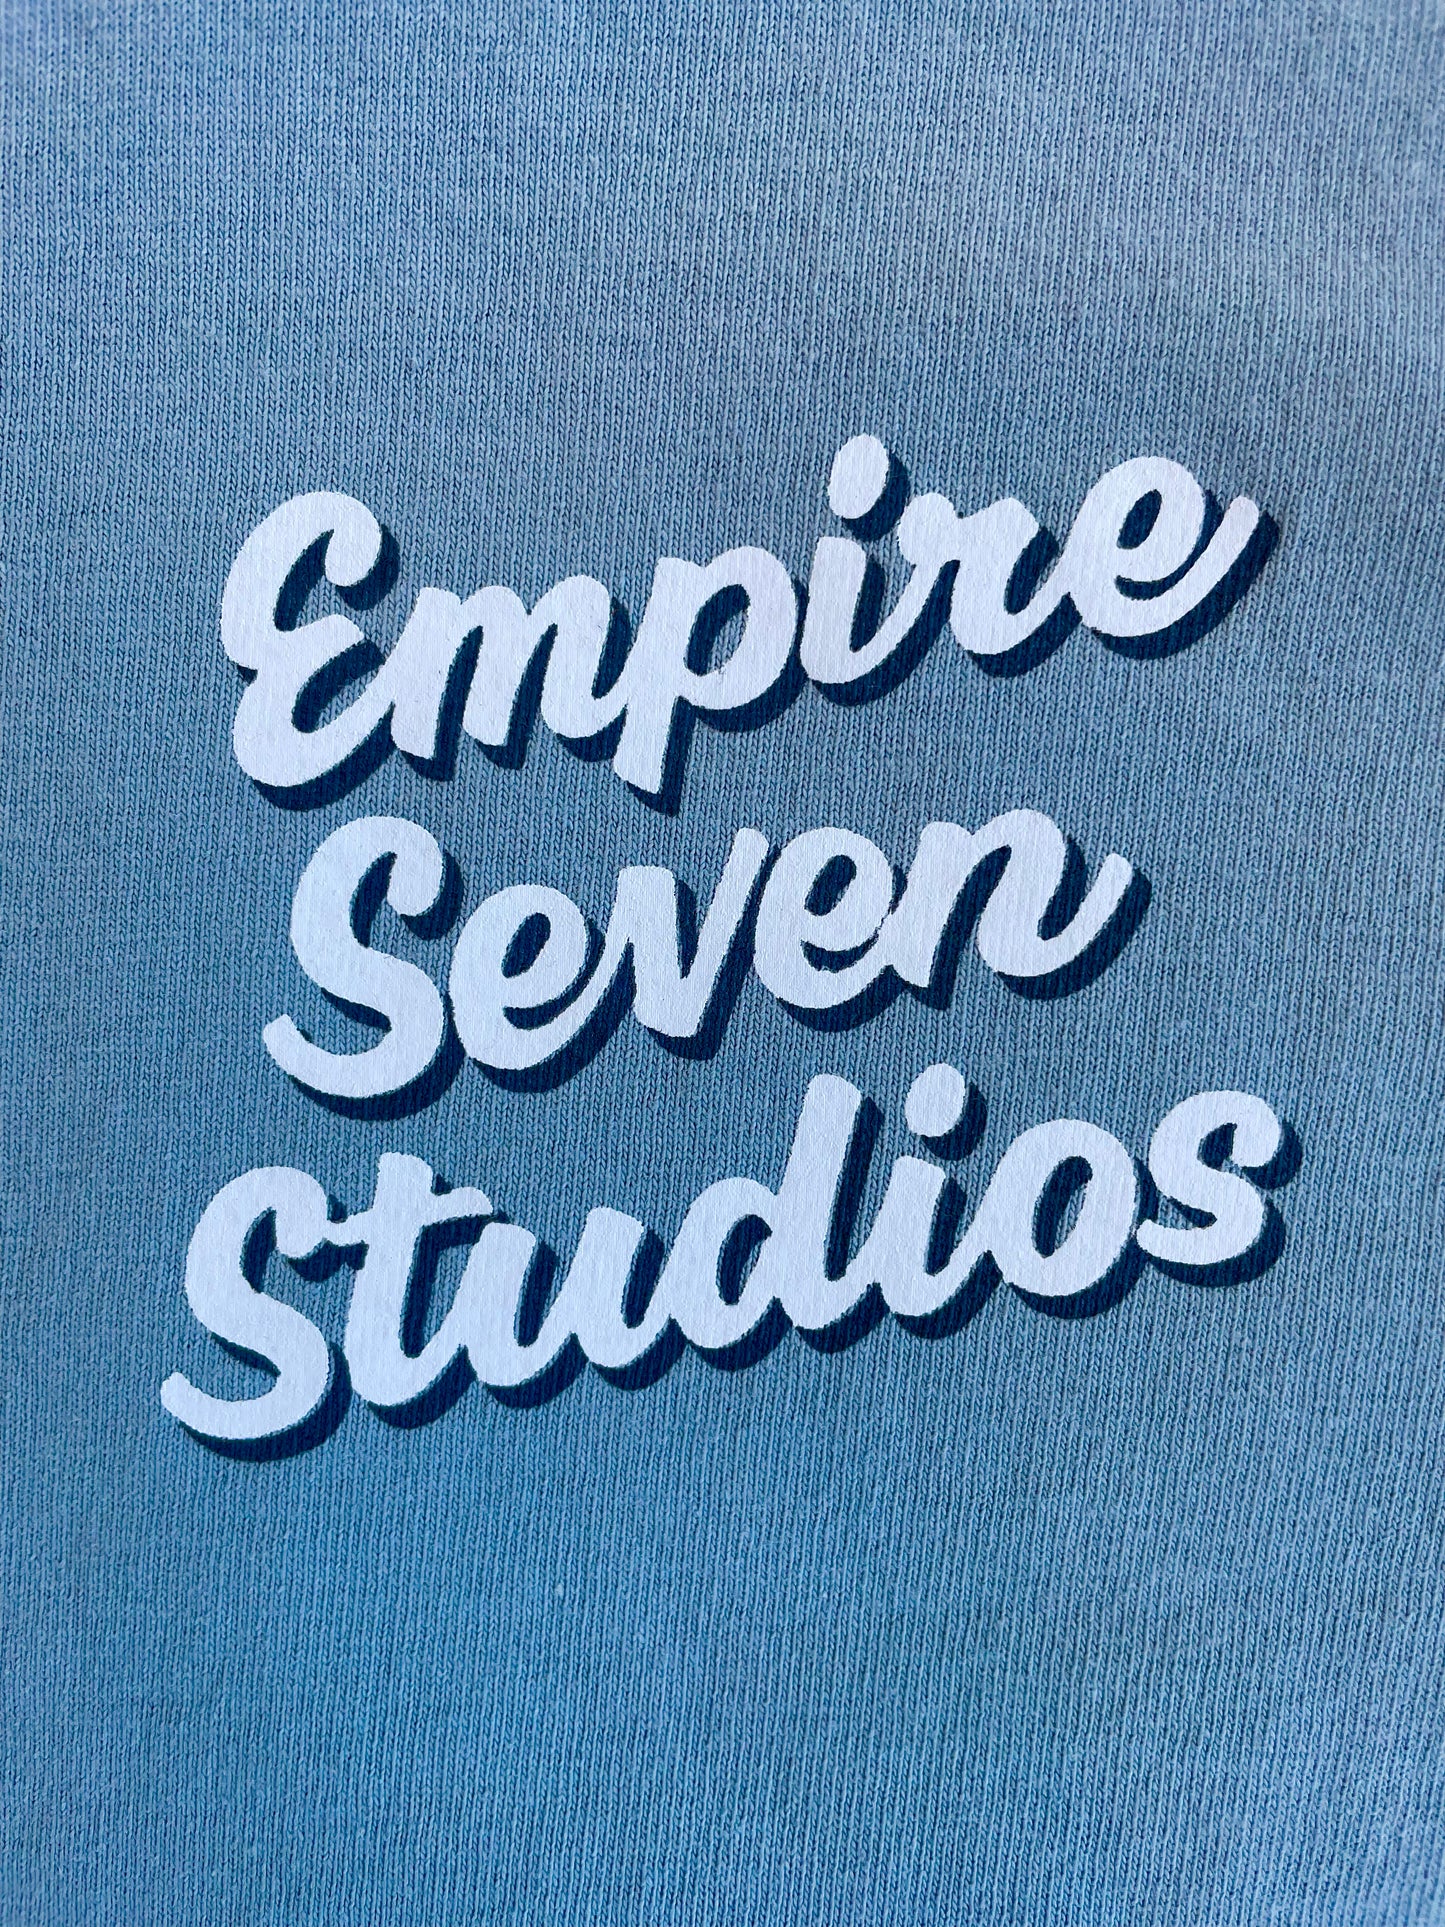 Empire Seven Studios Tshirt Unisex (Colors)